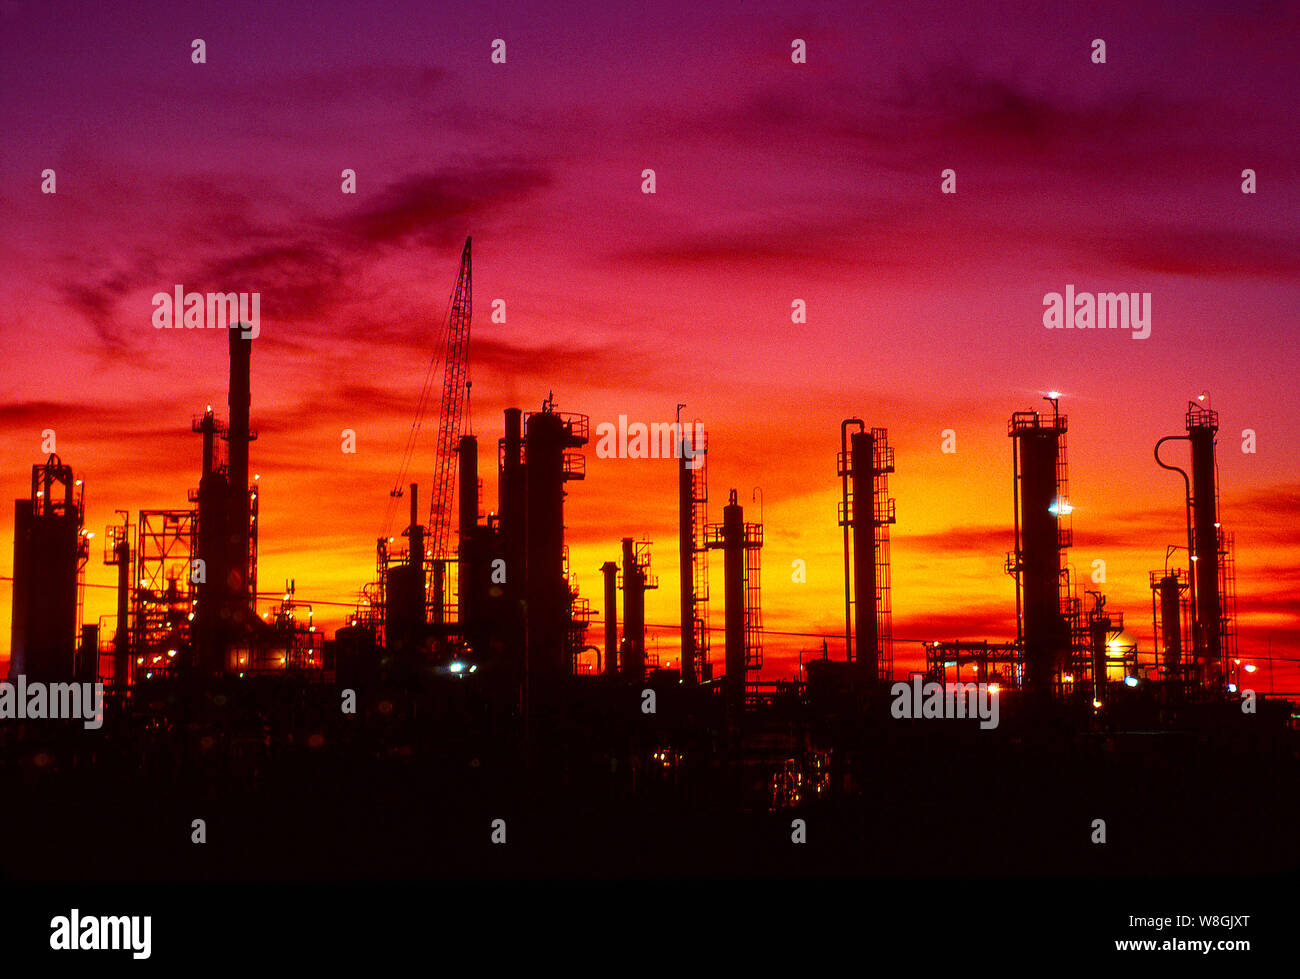 Très grandes raffineries de pétrole la production d'essence, le gaz naturel, le pétrole des sous-produits, lubrifiants et beaucoup d'autres produits à base de pétrole. Banque D'Images